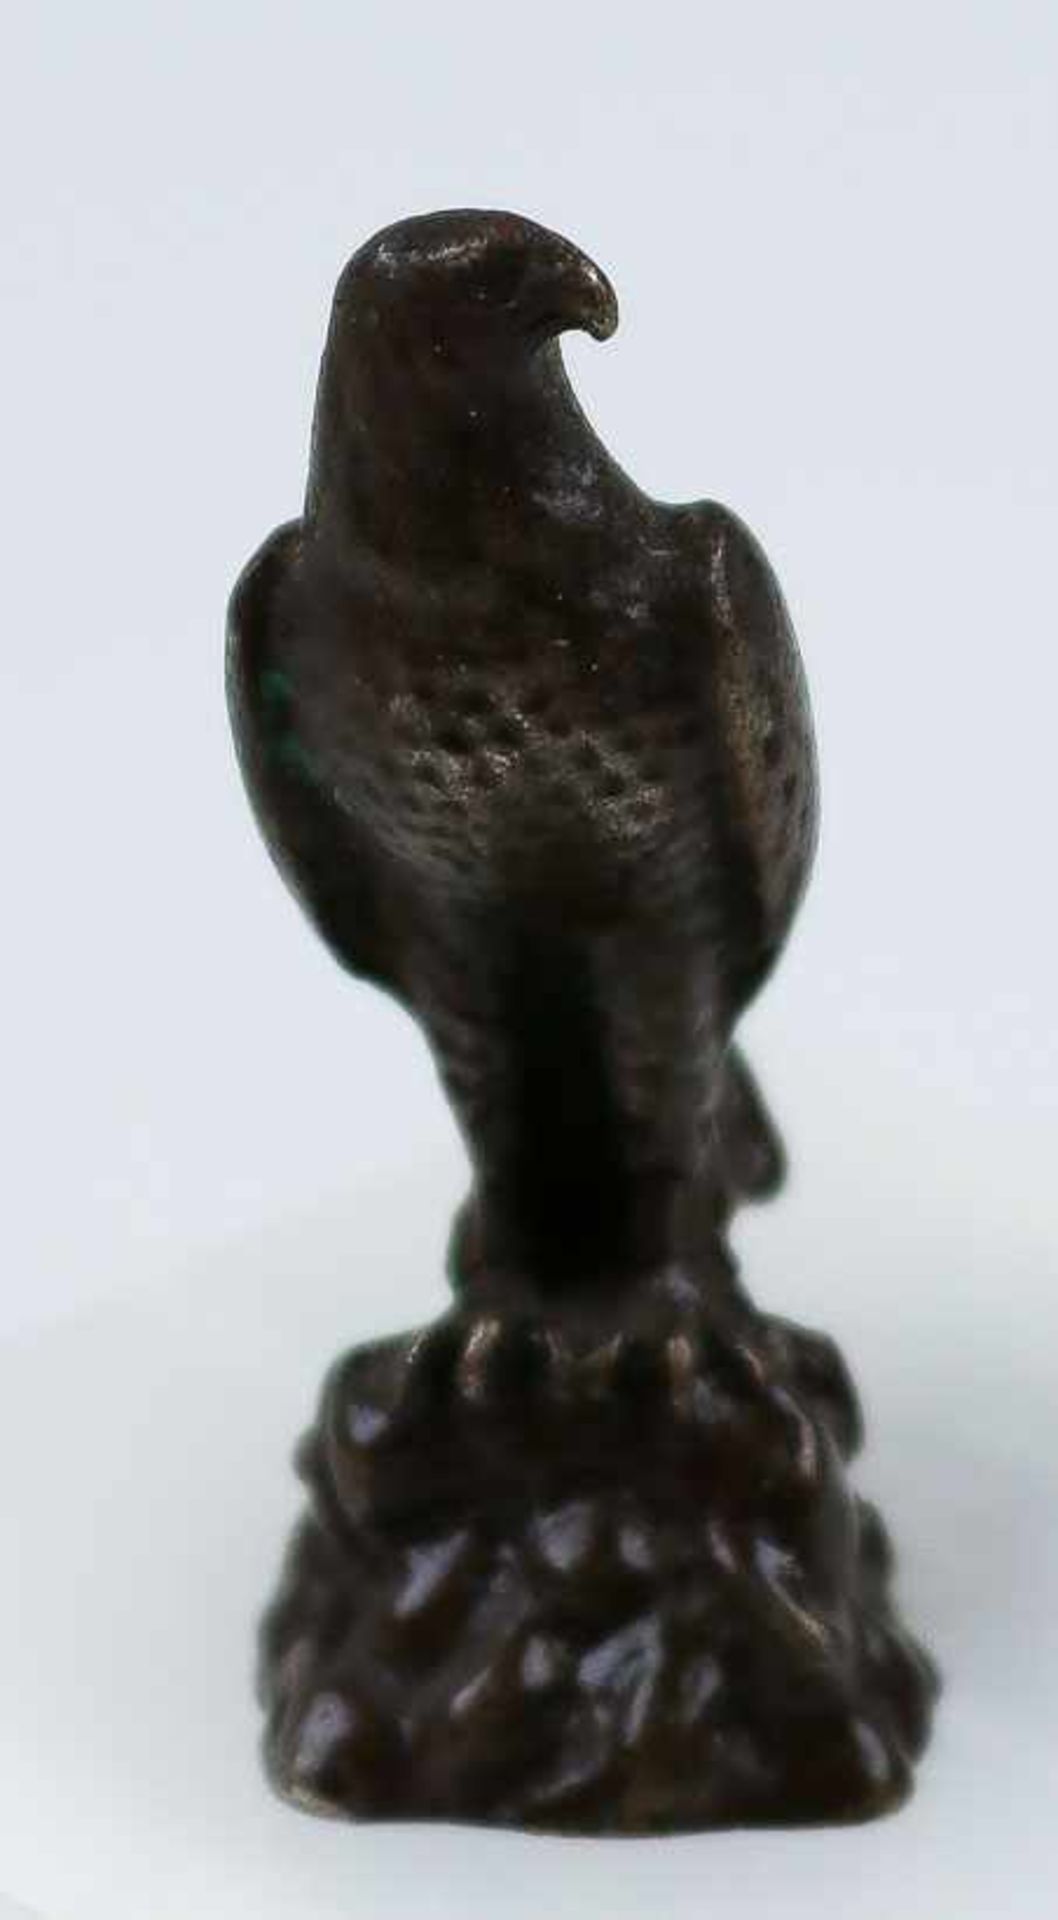 Kleiner römischer Adler aus Blei gegossen. H. 3,5 cm. Ca. 3. Jh. v. u. Z. (57372)